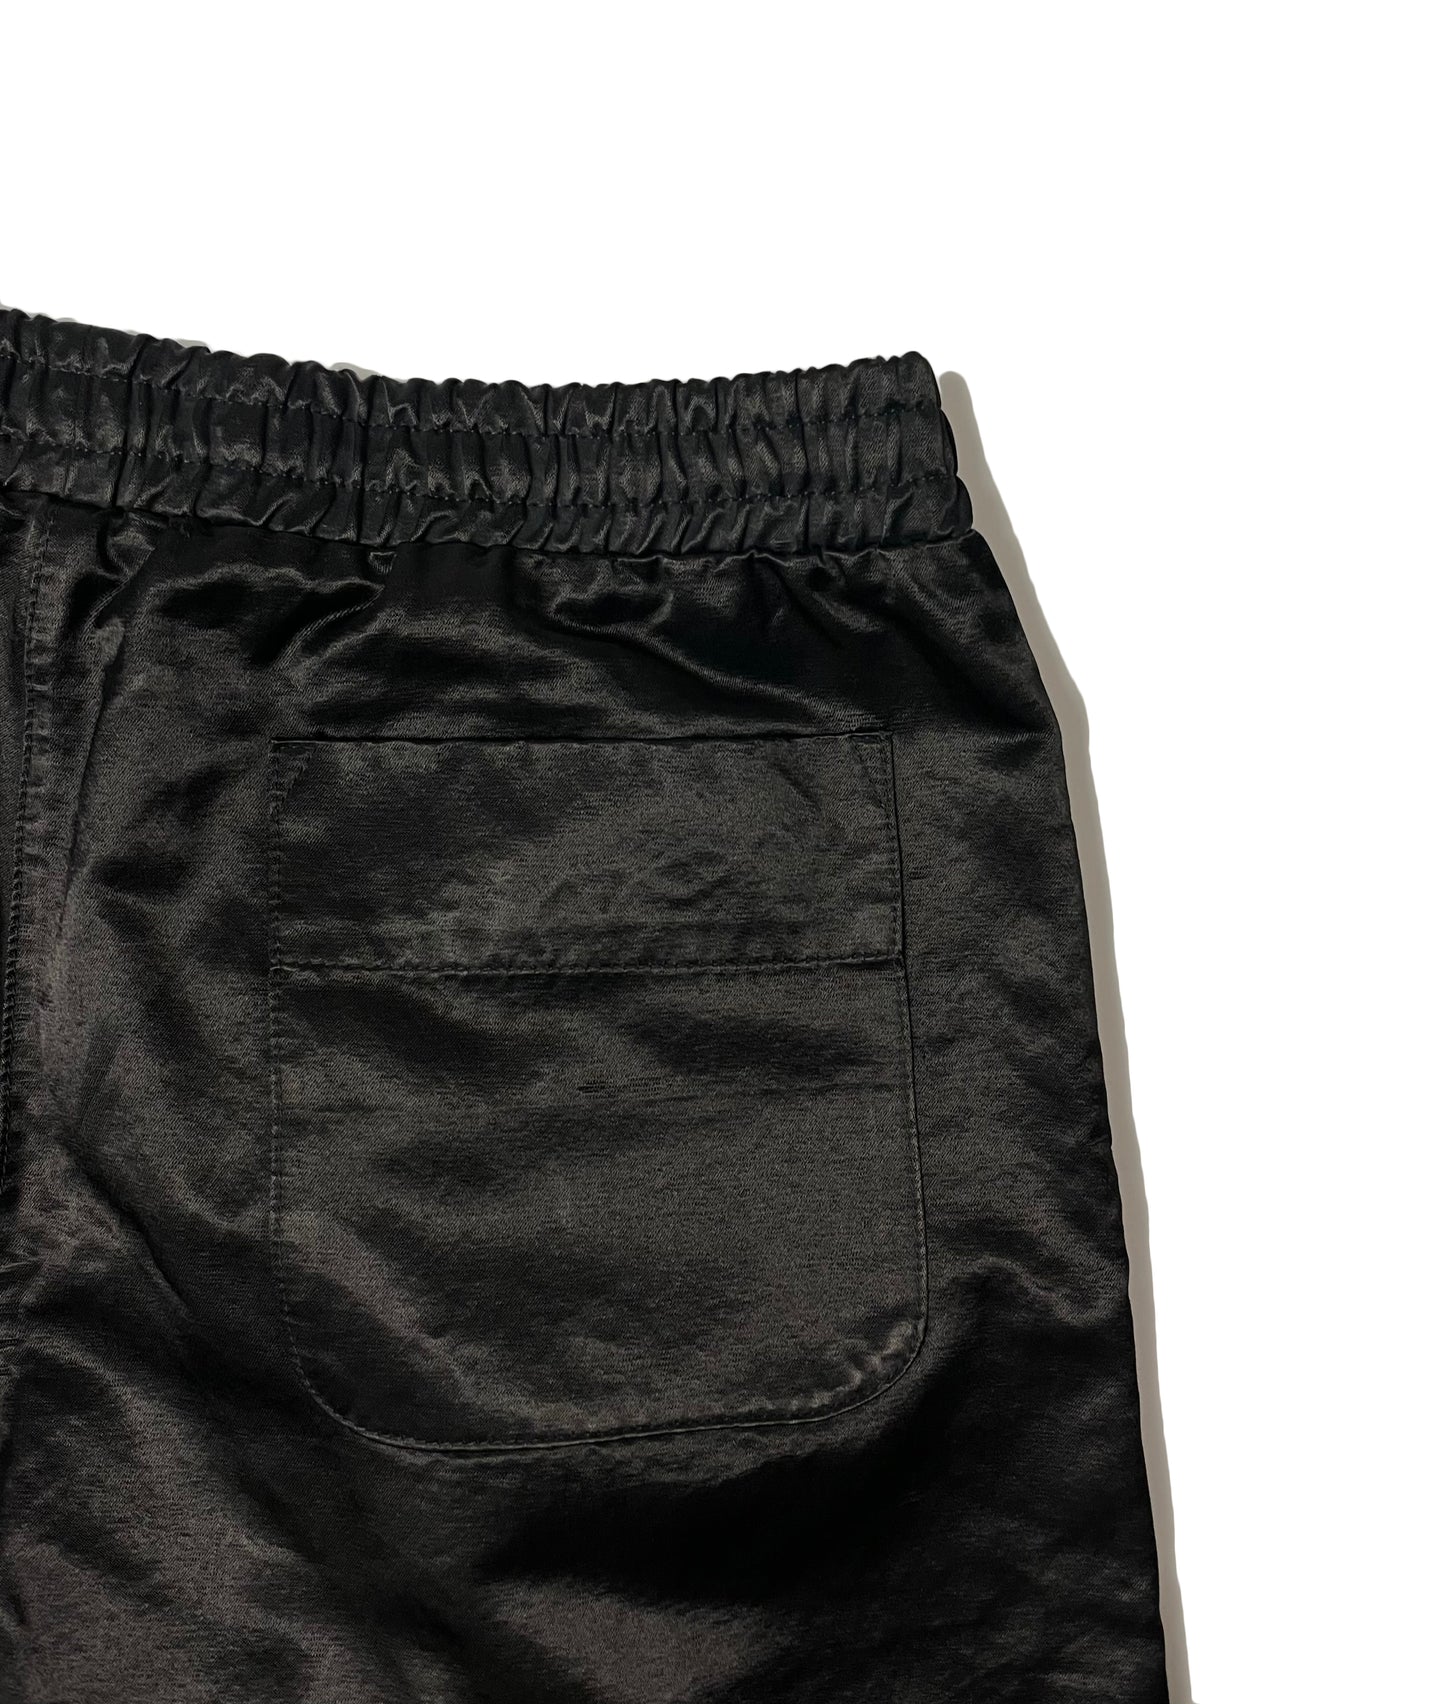 The Flaming Black Short Shorts